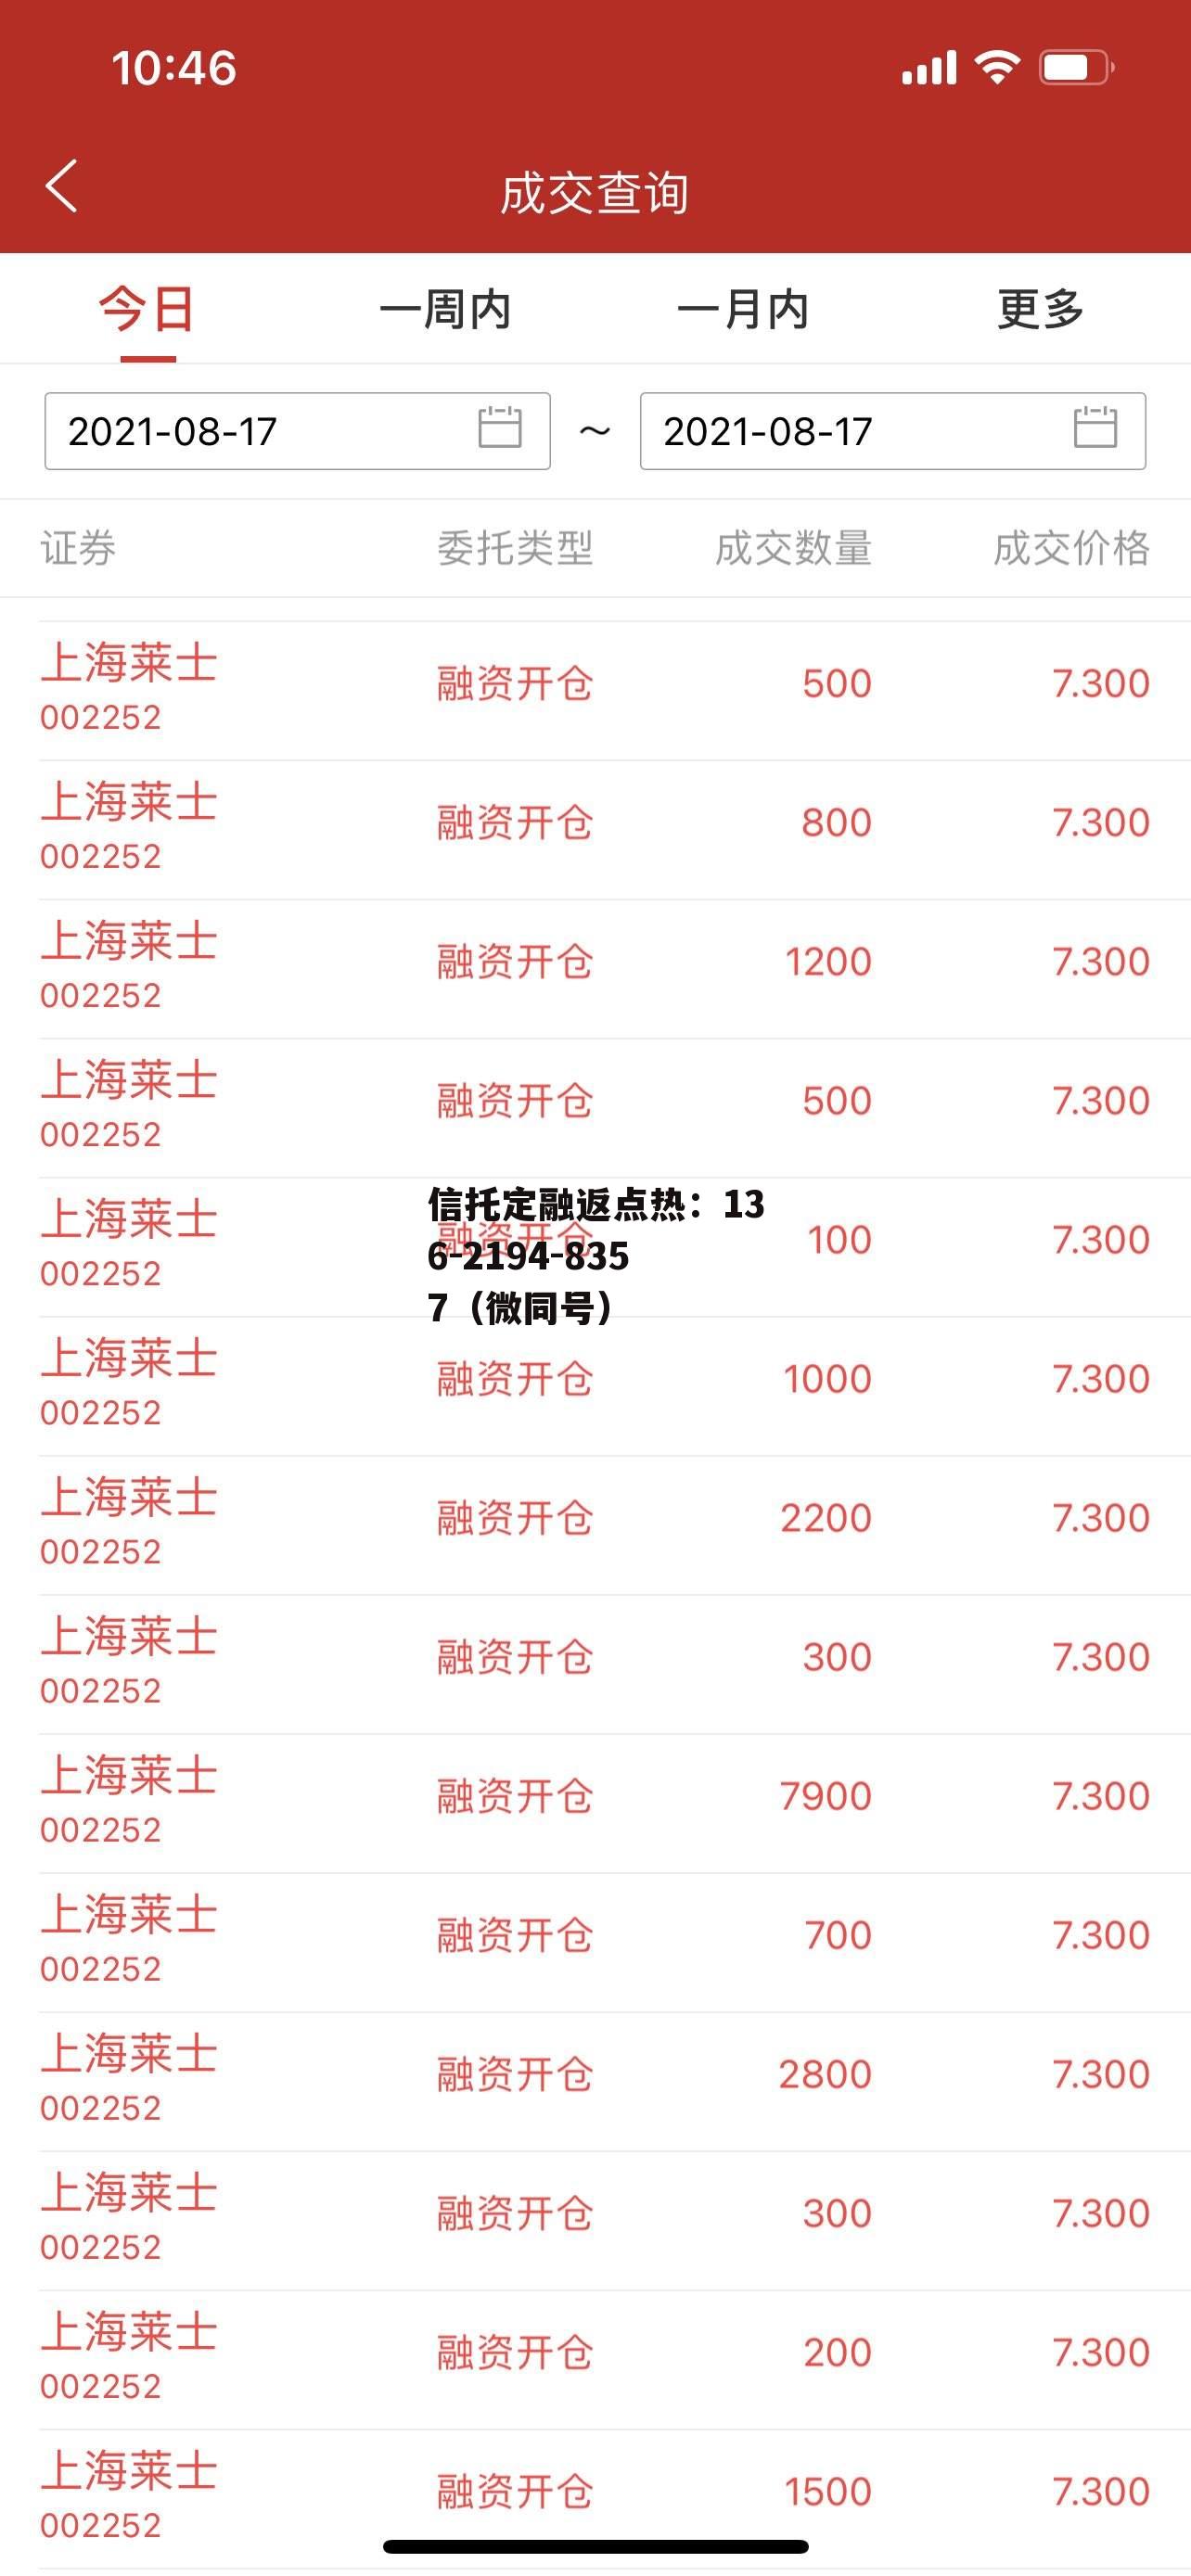 002252上海莱士，002252上海莱士股票怎么样